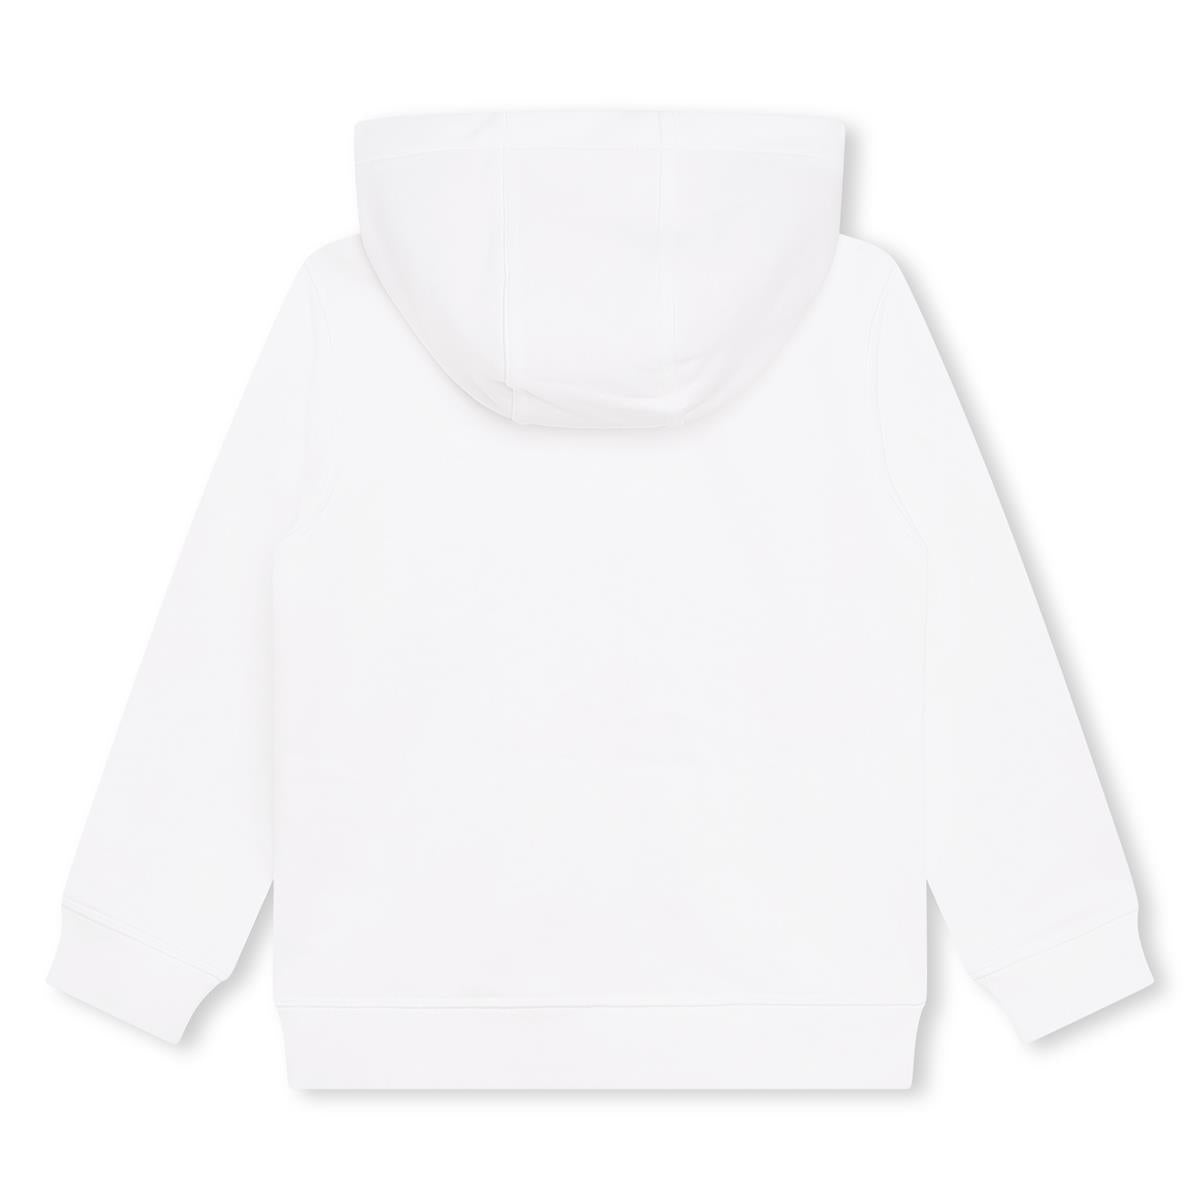 Girls White Logo Sweatshirt